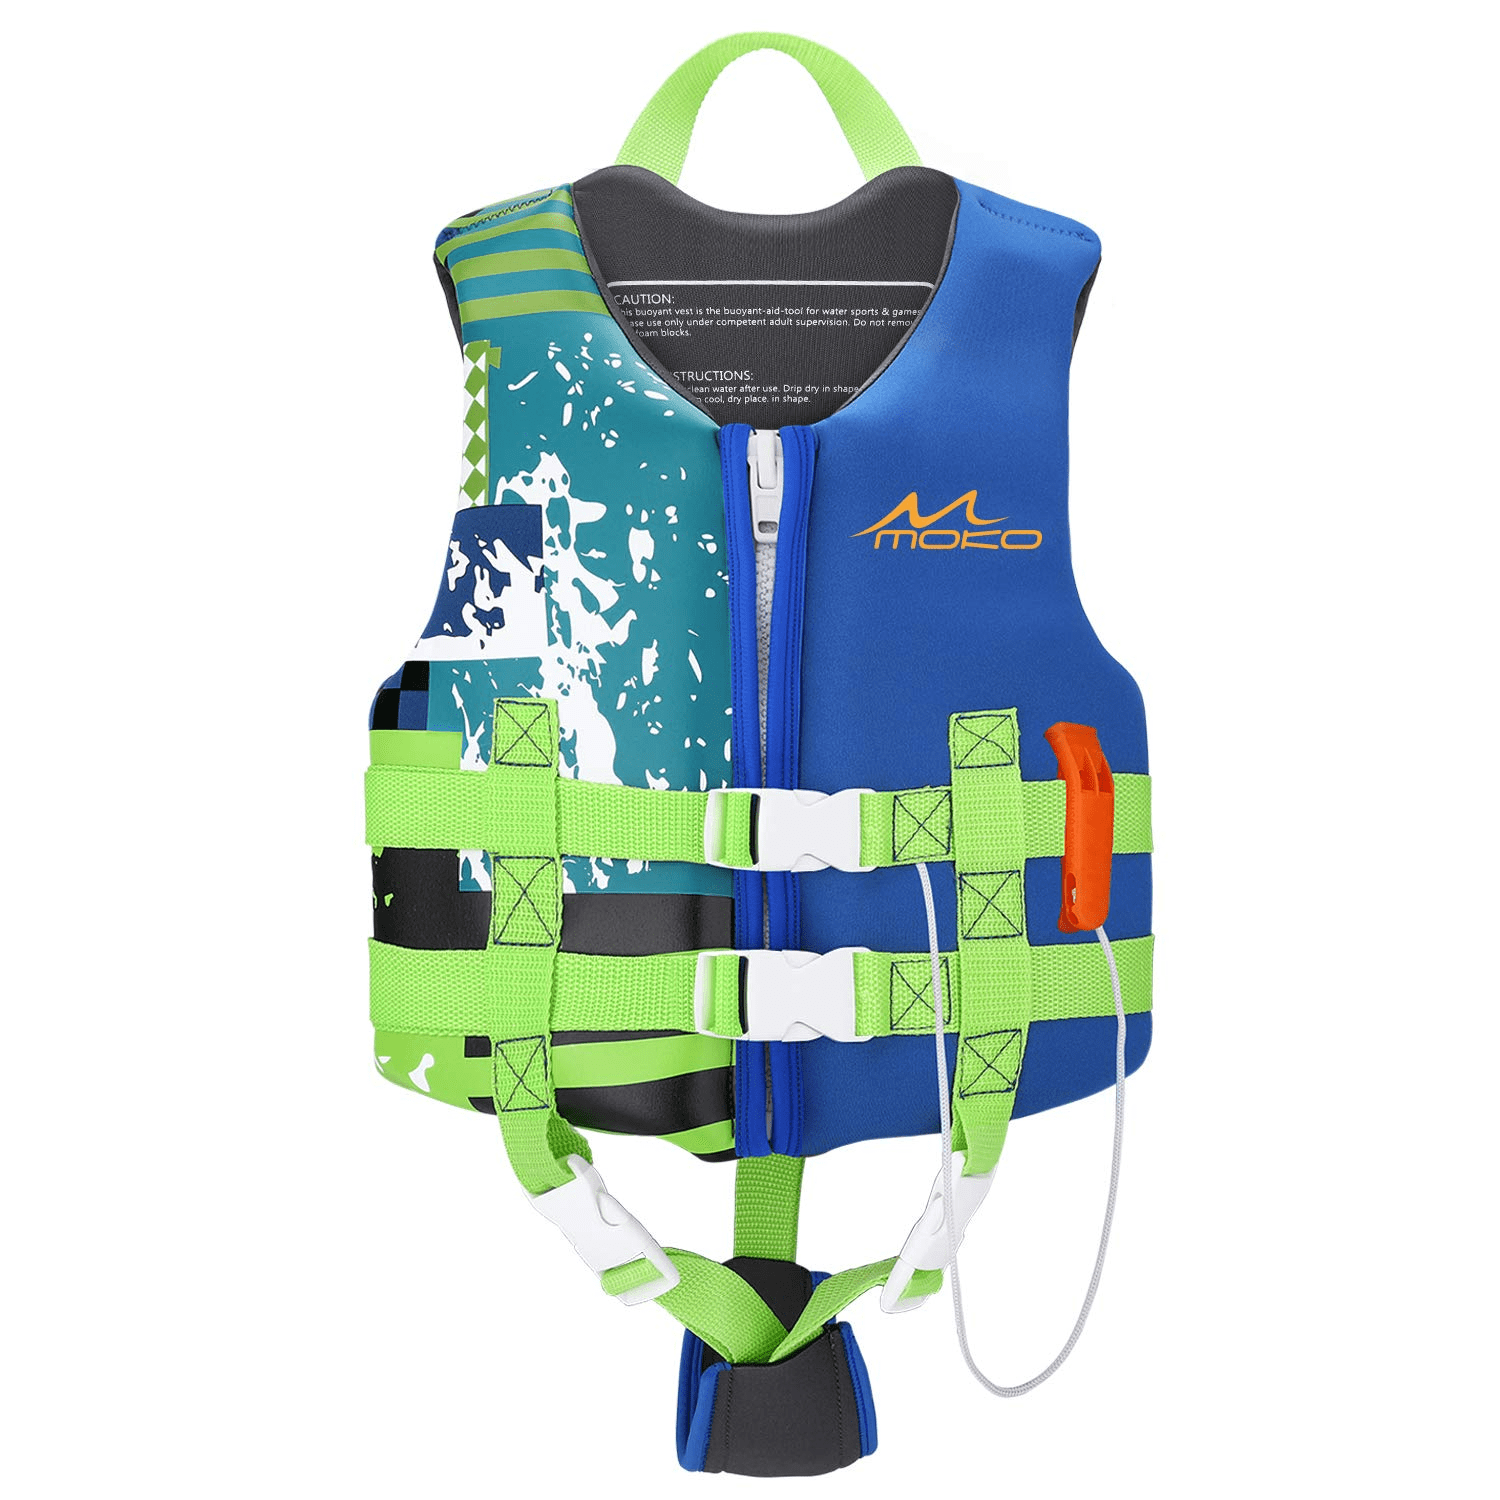 Child Life Jacket Swimming Floating New Swim Vest Buoyancy Kids Aid Jacket Toy 